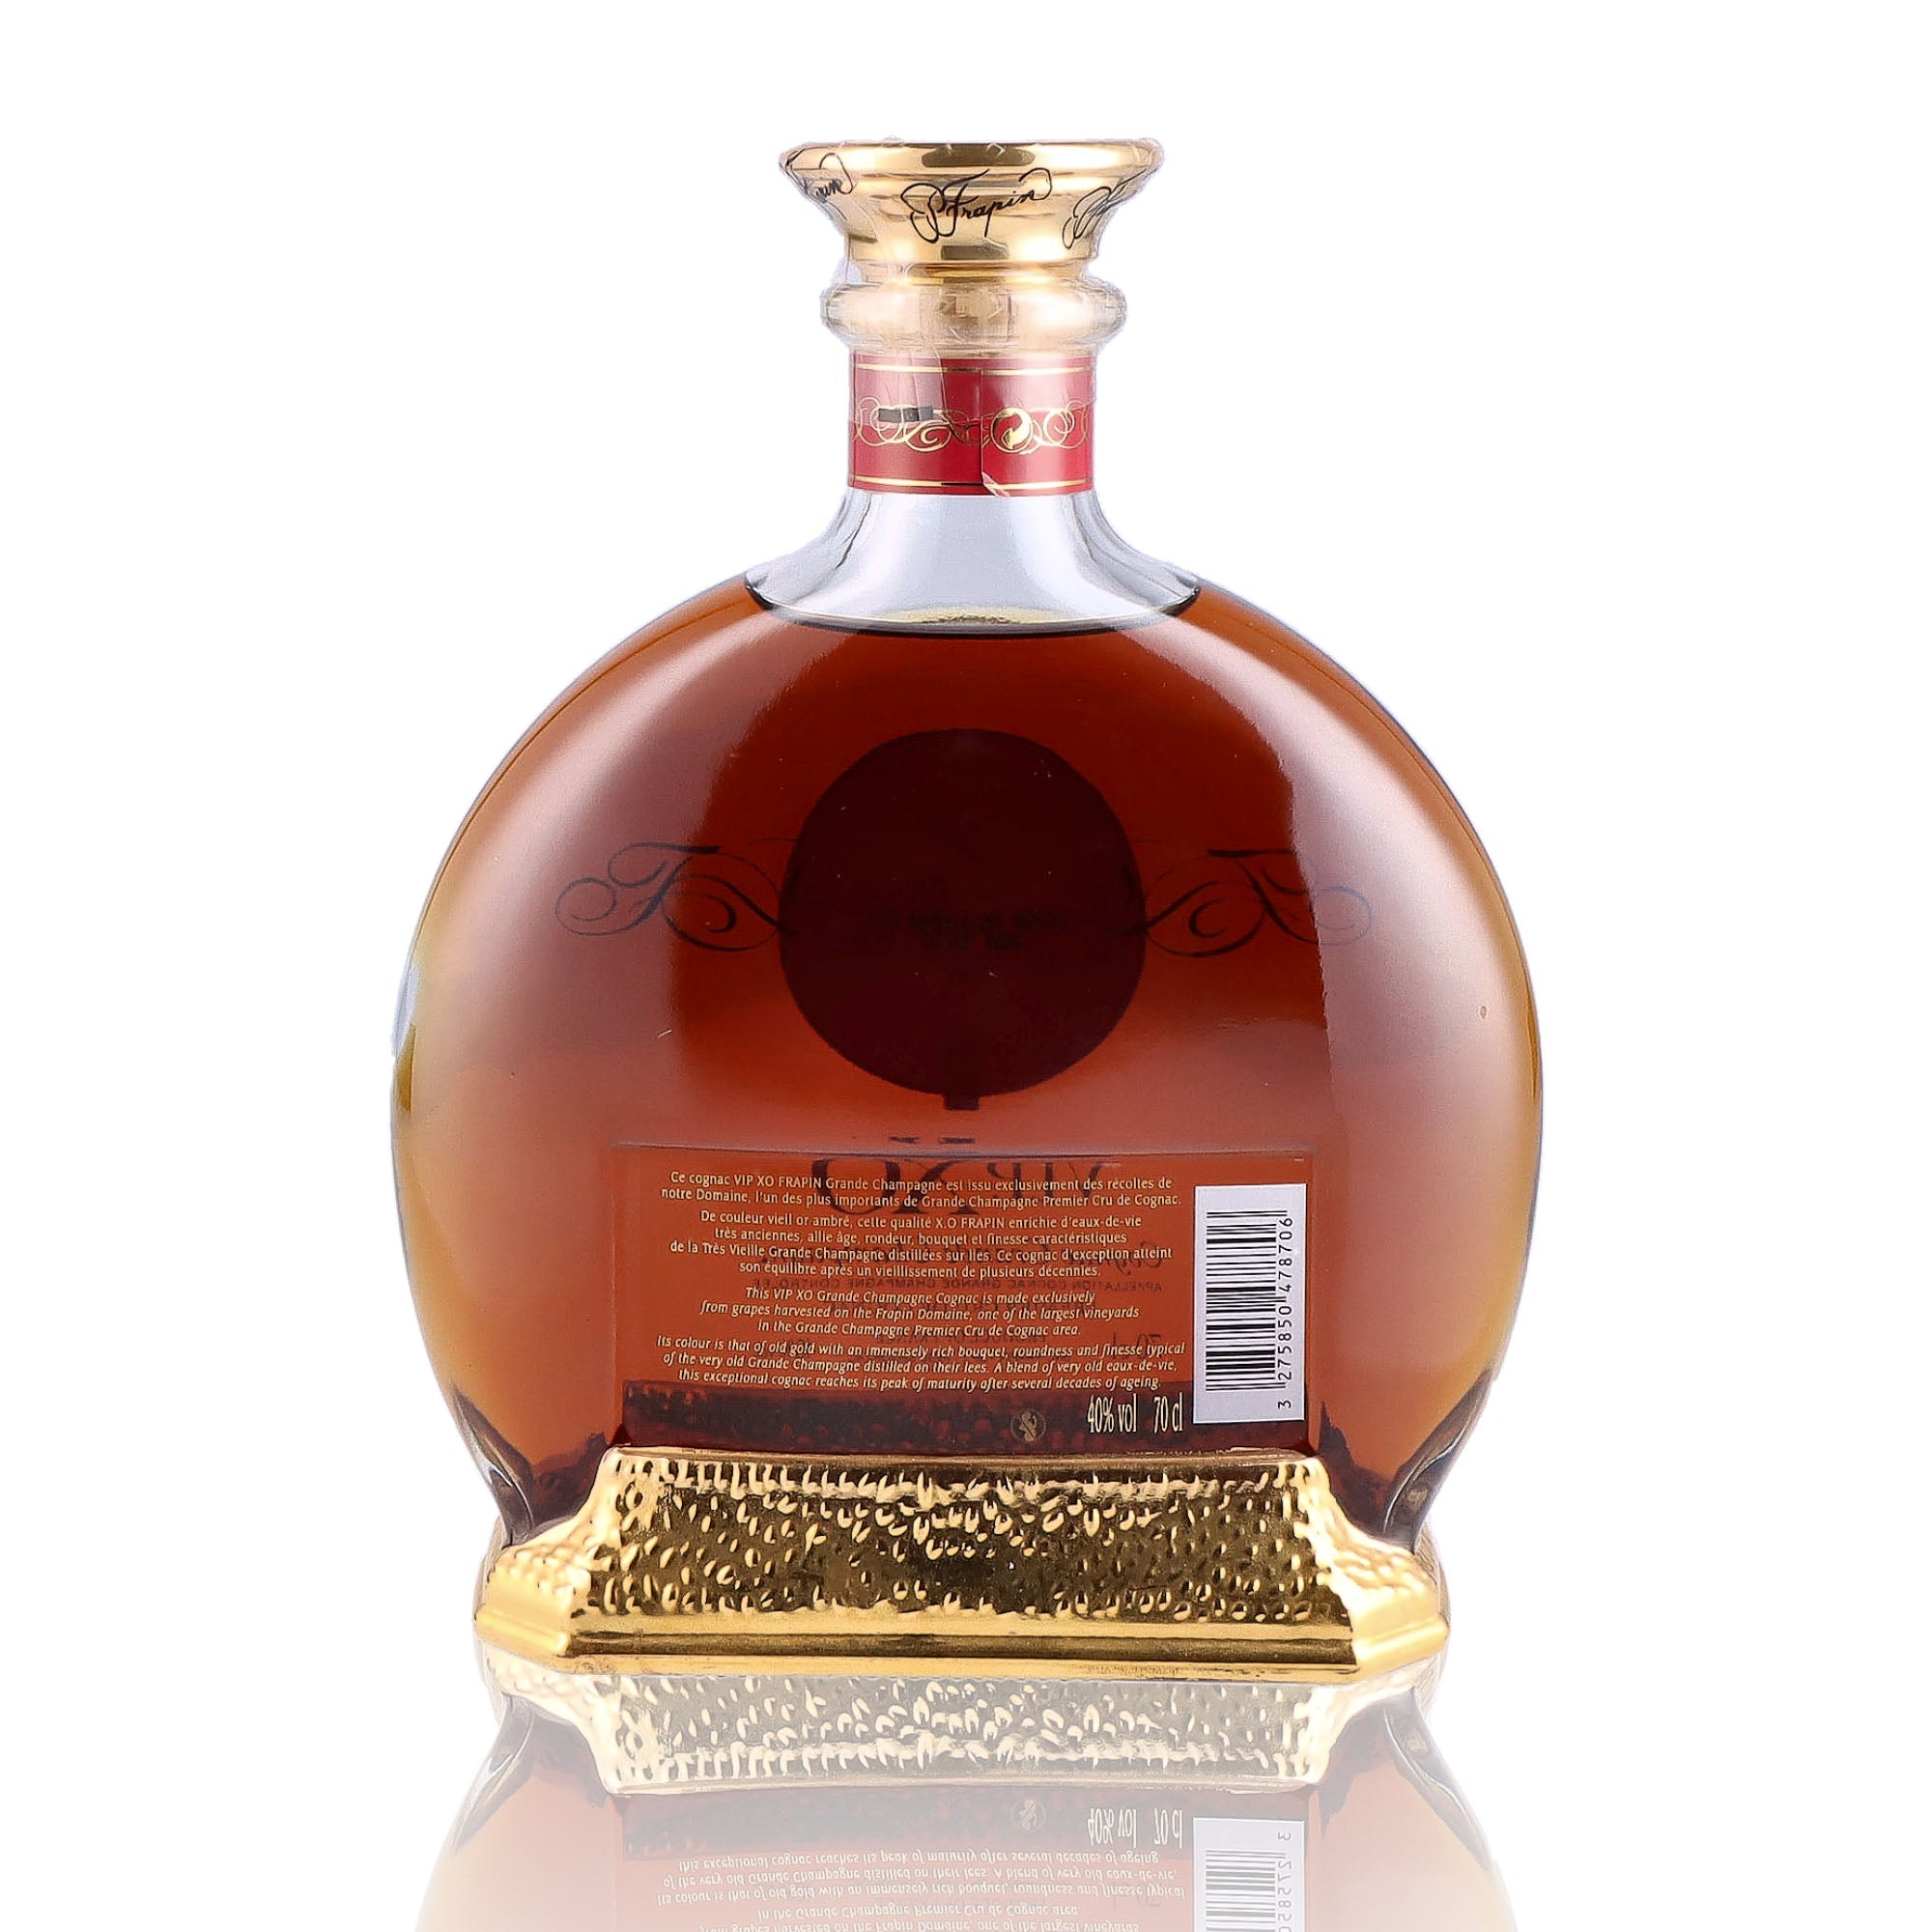 Une bouteille de Cognac, de la marque Frapin, nommée VIP XO.